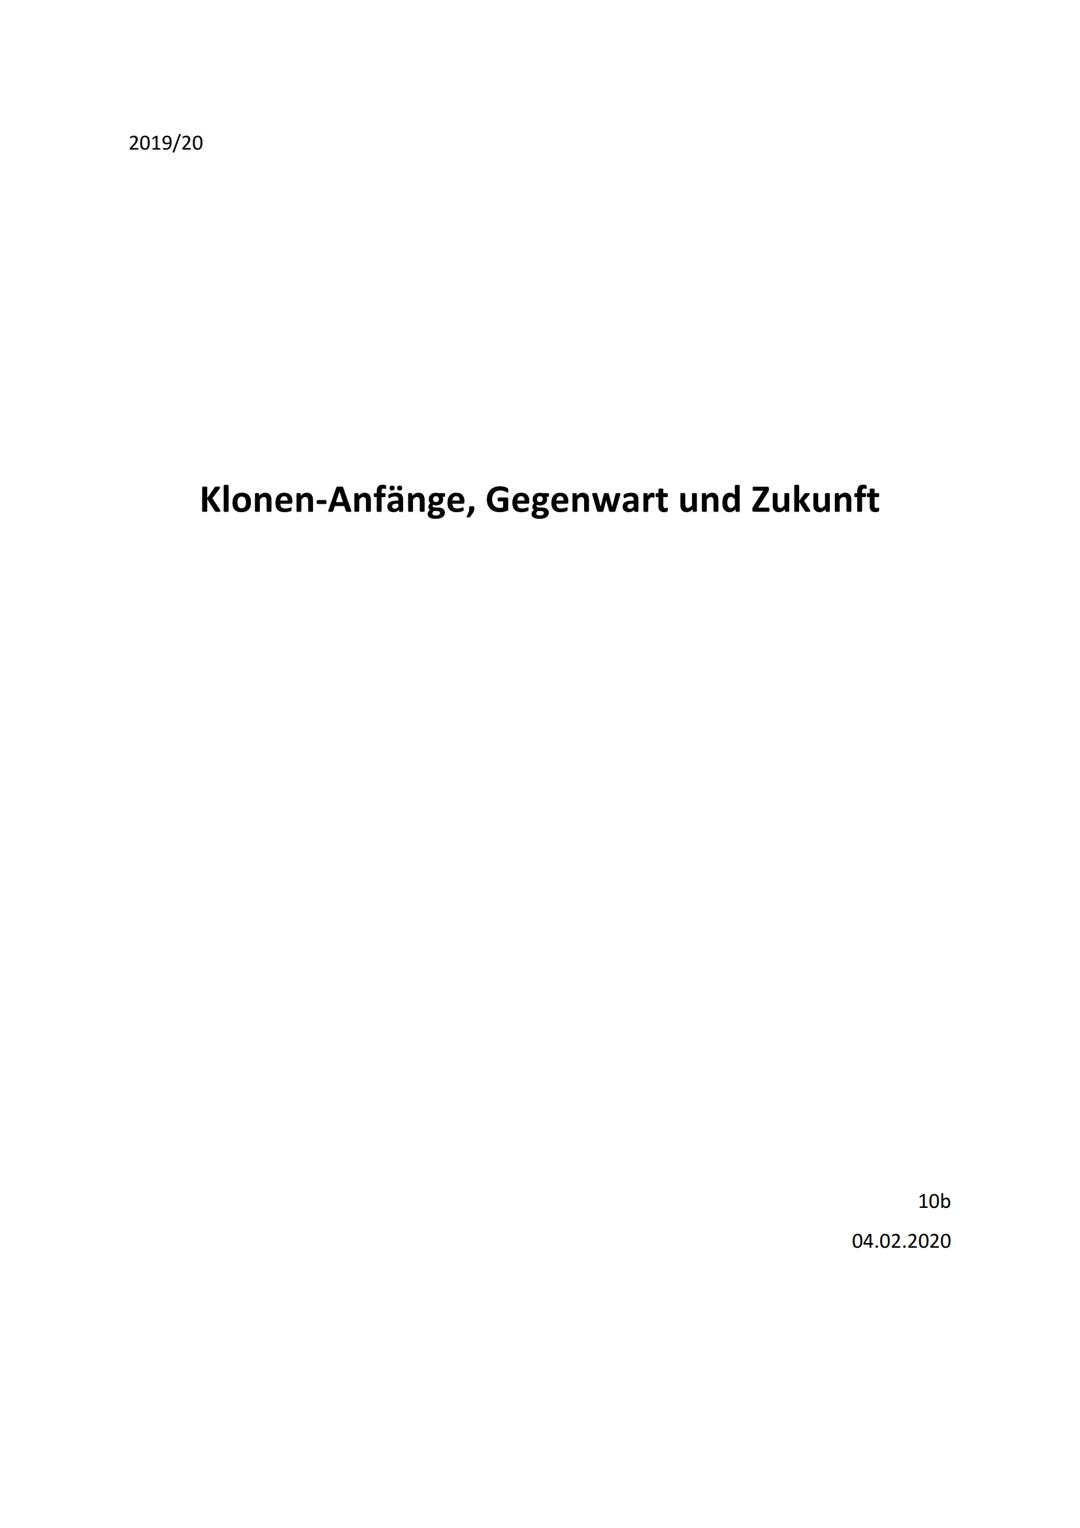 2019/20
Klonen-Anfänge, Gegenwart und Zukunft
10b
04.02.2020 1.
II.
III.
Einleitung
Anfänge
A. Erste Untersuchungen und Anwendungen
B. Dolly